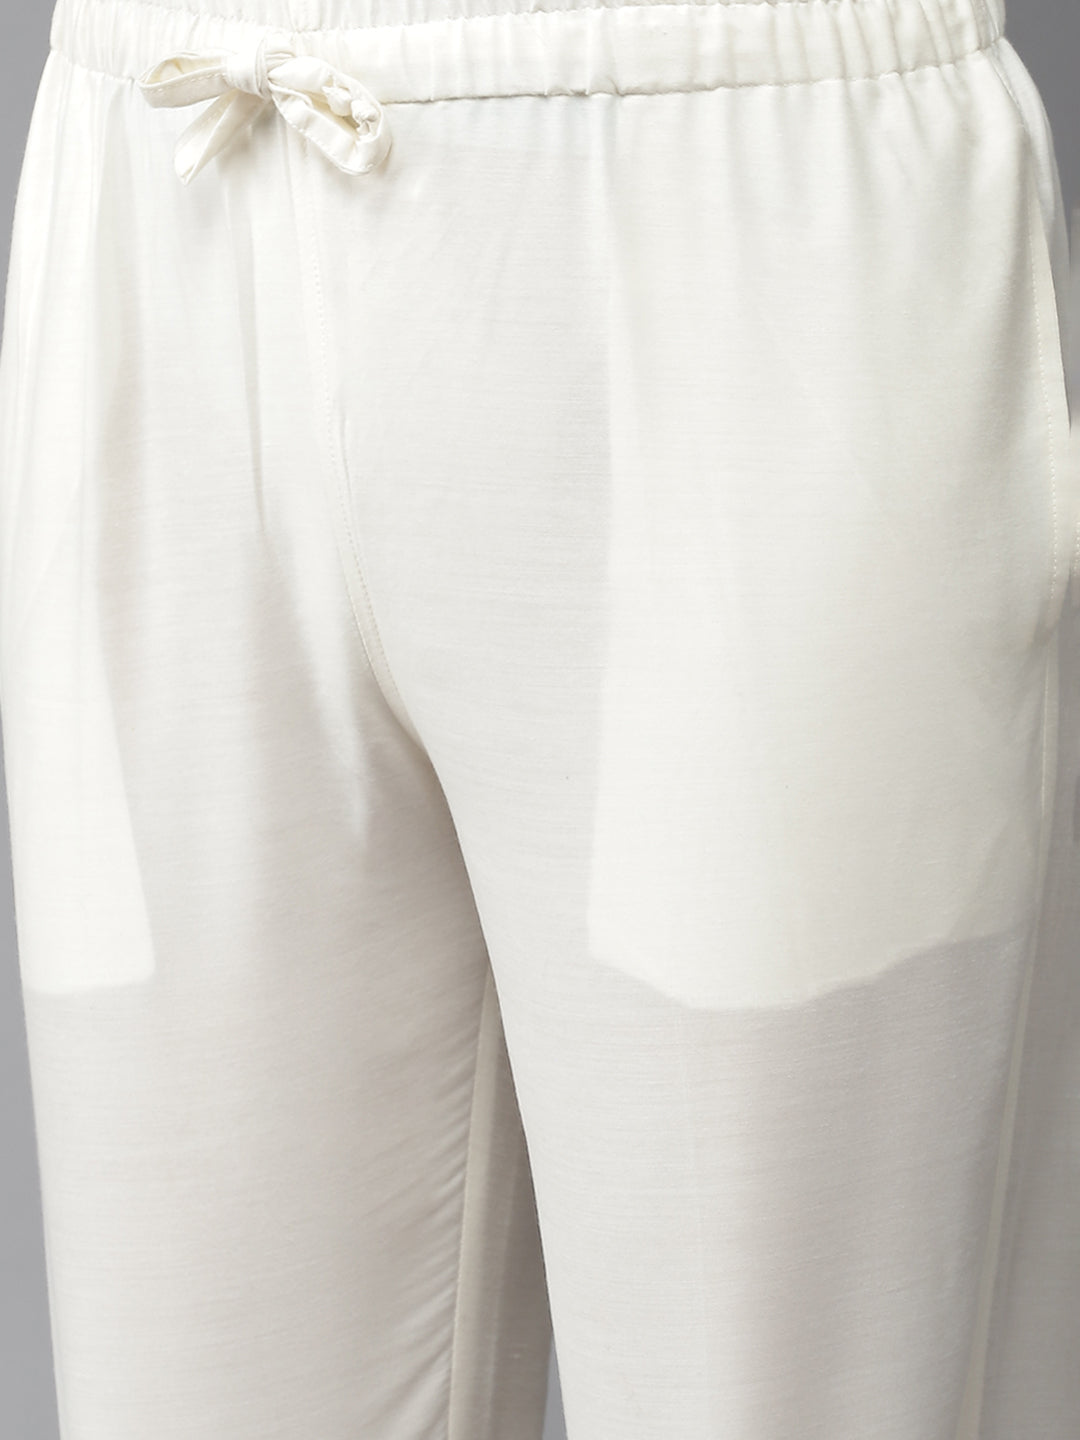 Men White Cotton Slik Straight Kurta With Pyjama